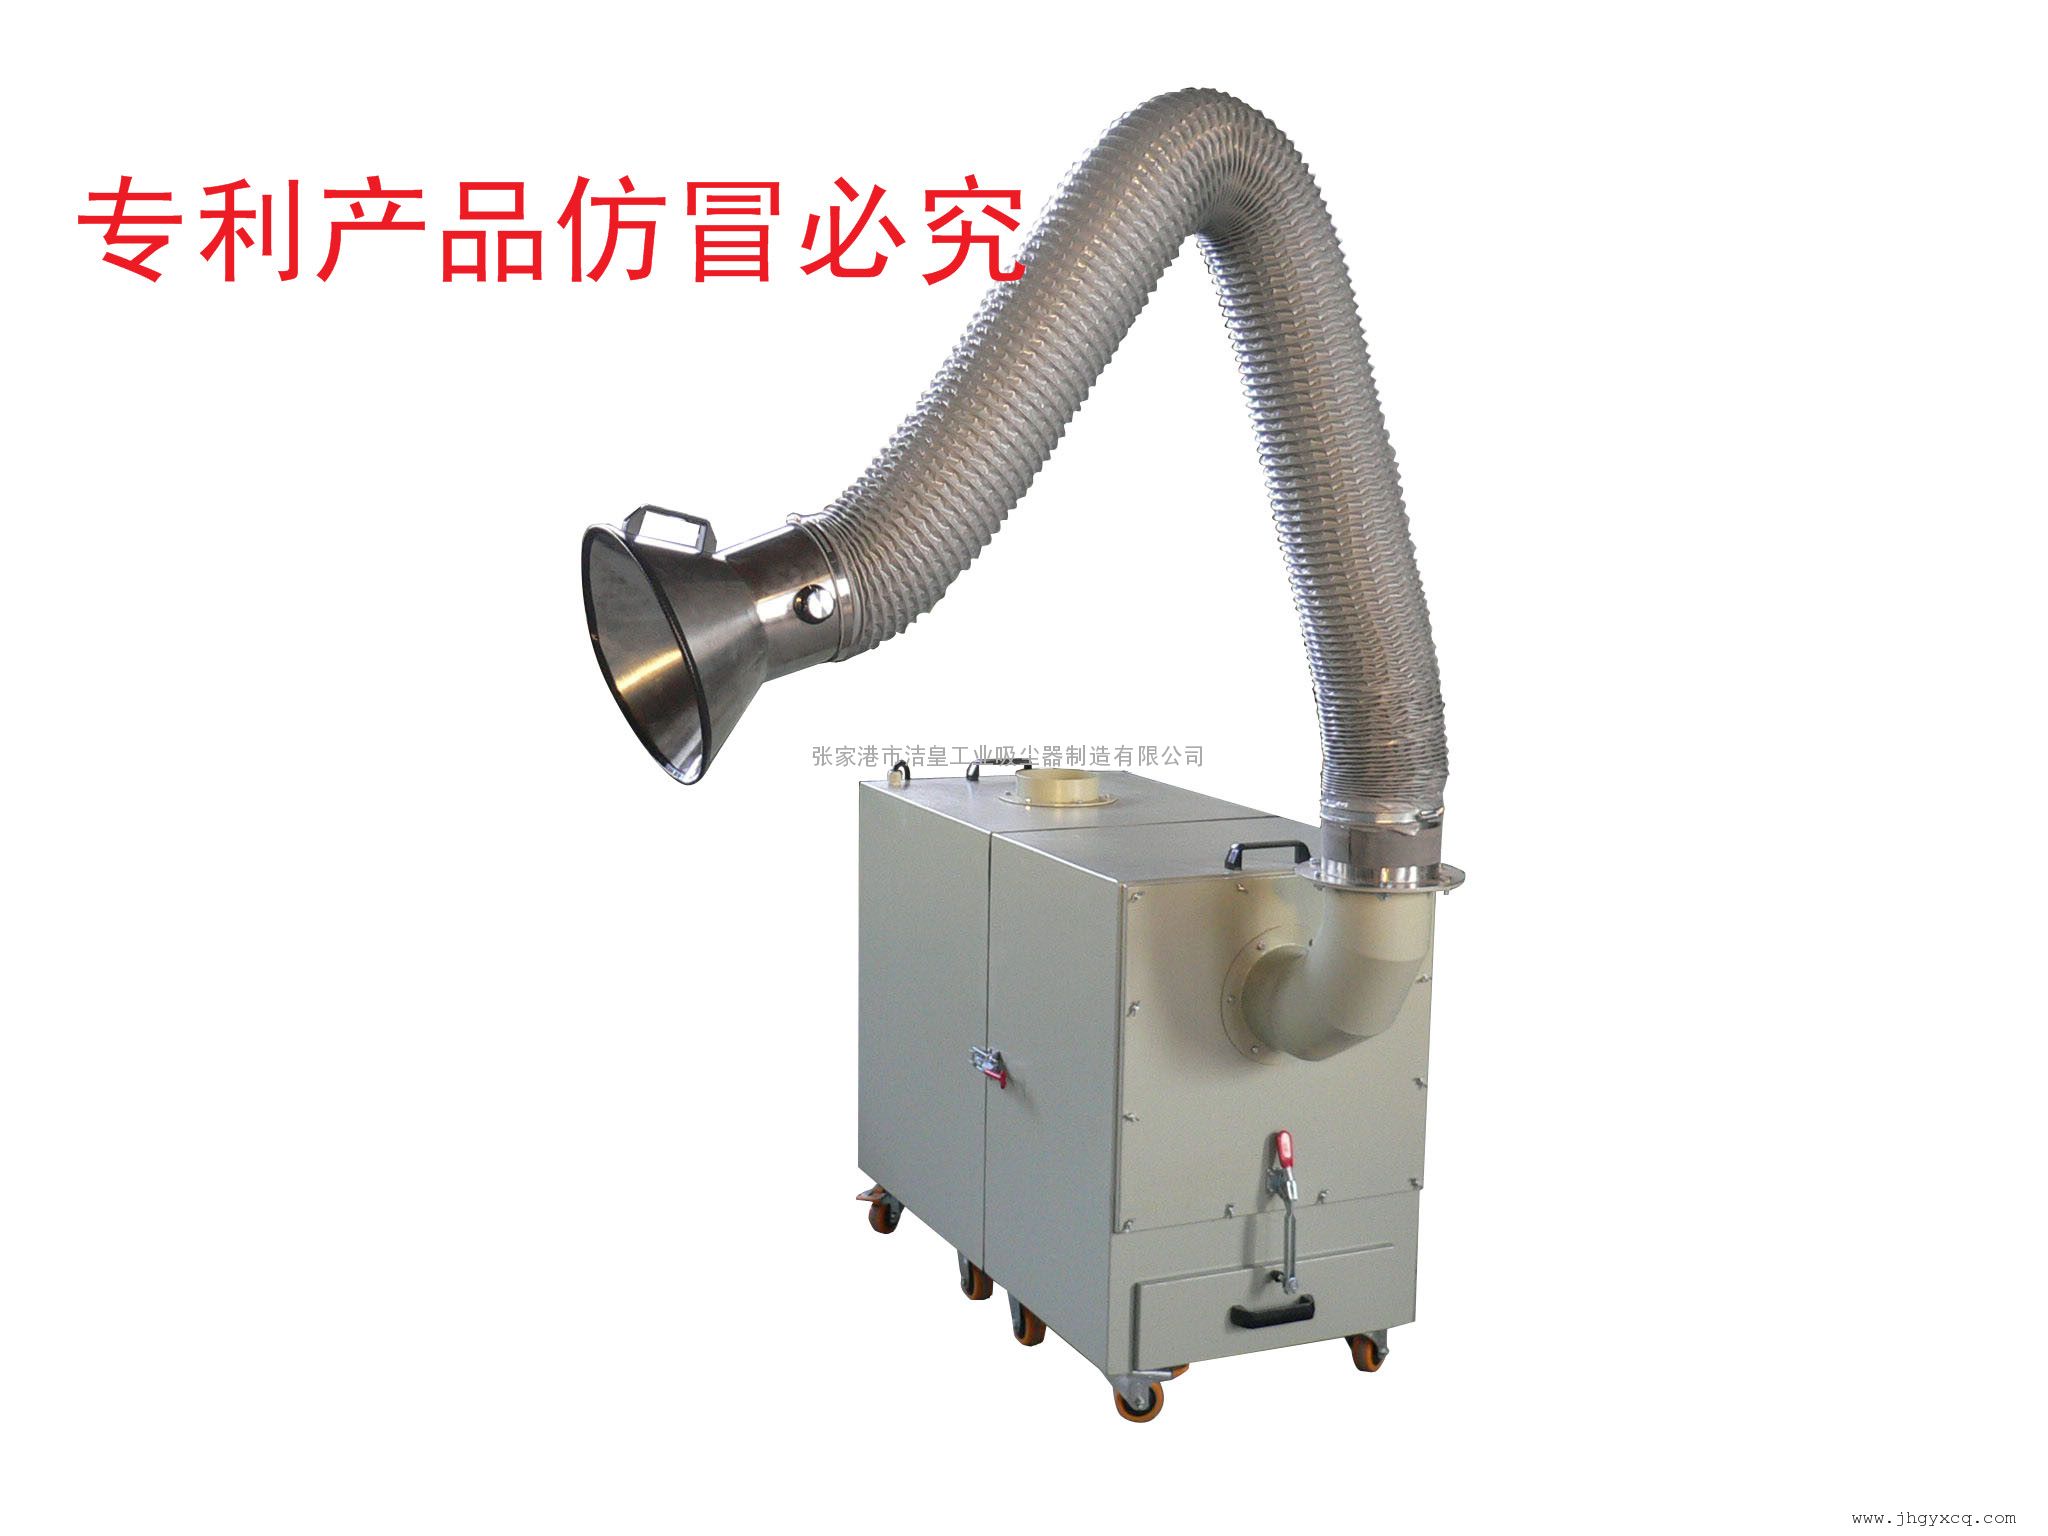 张家港市洁皇工业吸尘器制造有限公司 产品展示 除尘器 便携式除尘器